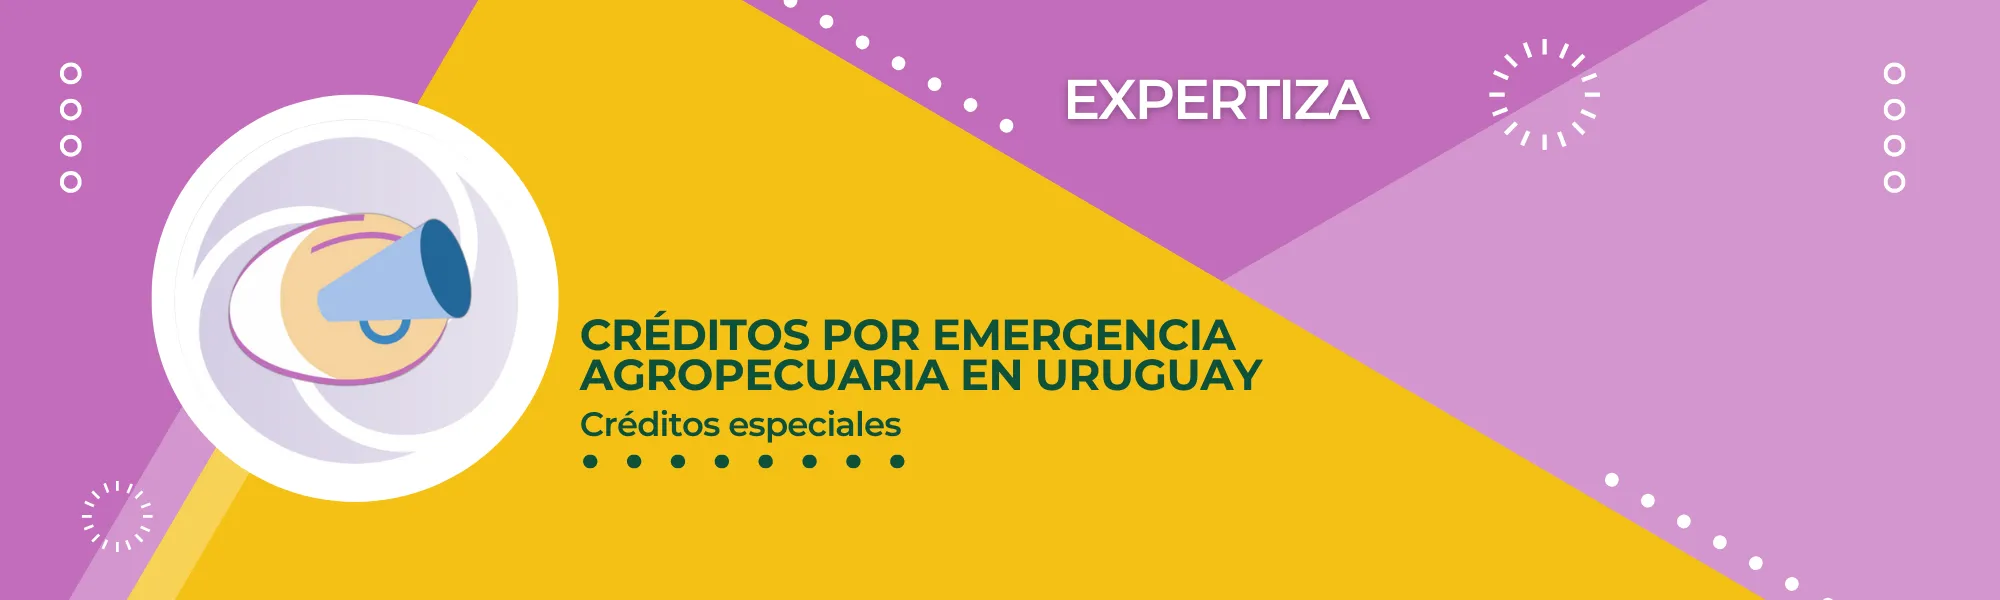 Créditos por emergencia agropecuaria en Uruguay.